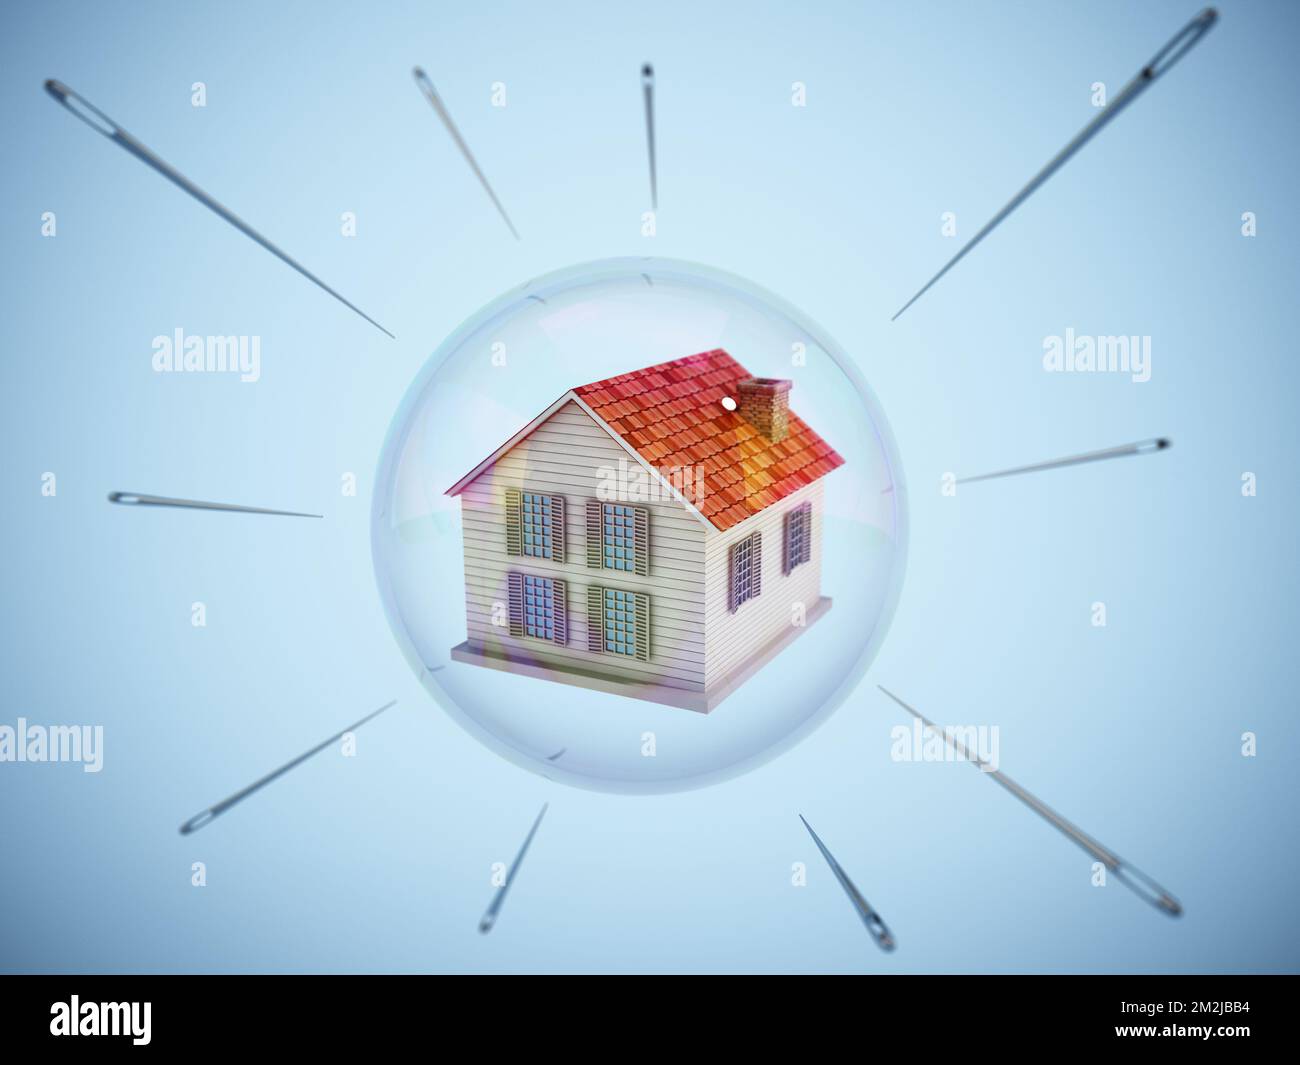 Les aiguilles entourant la maison à l'intérieur d'une bulle flottante. Bulle immobilière et concept à haut risque. 3D illustration. Banque D'Images